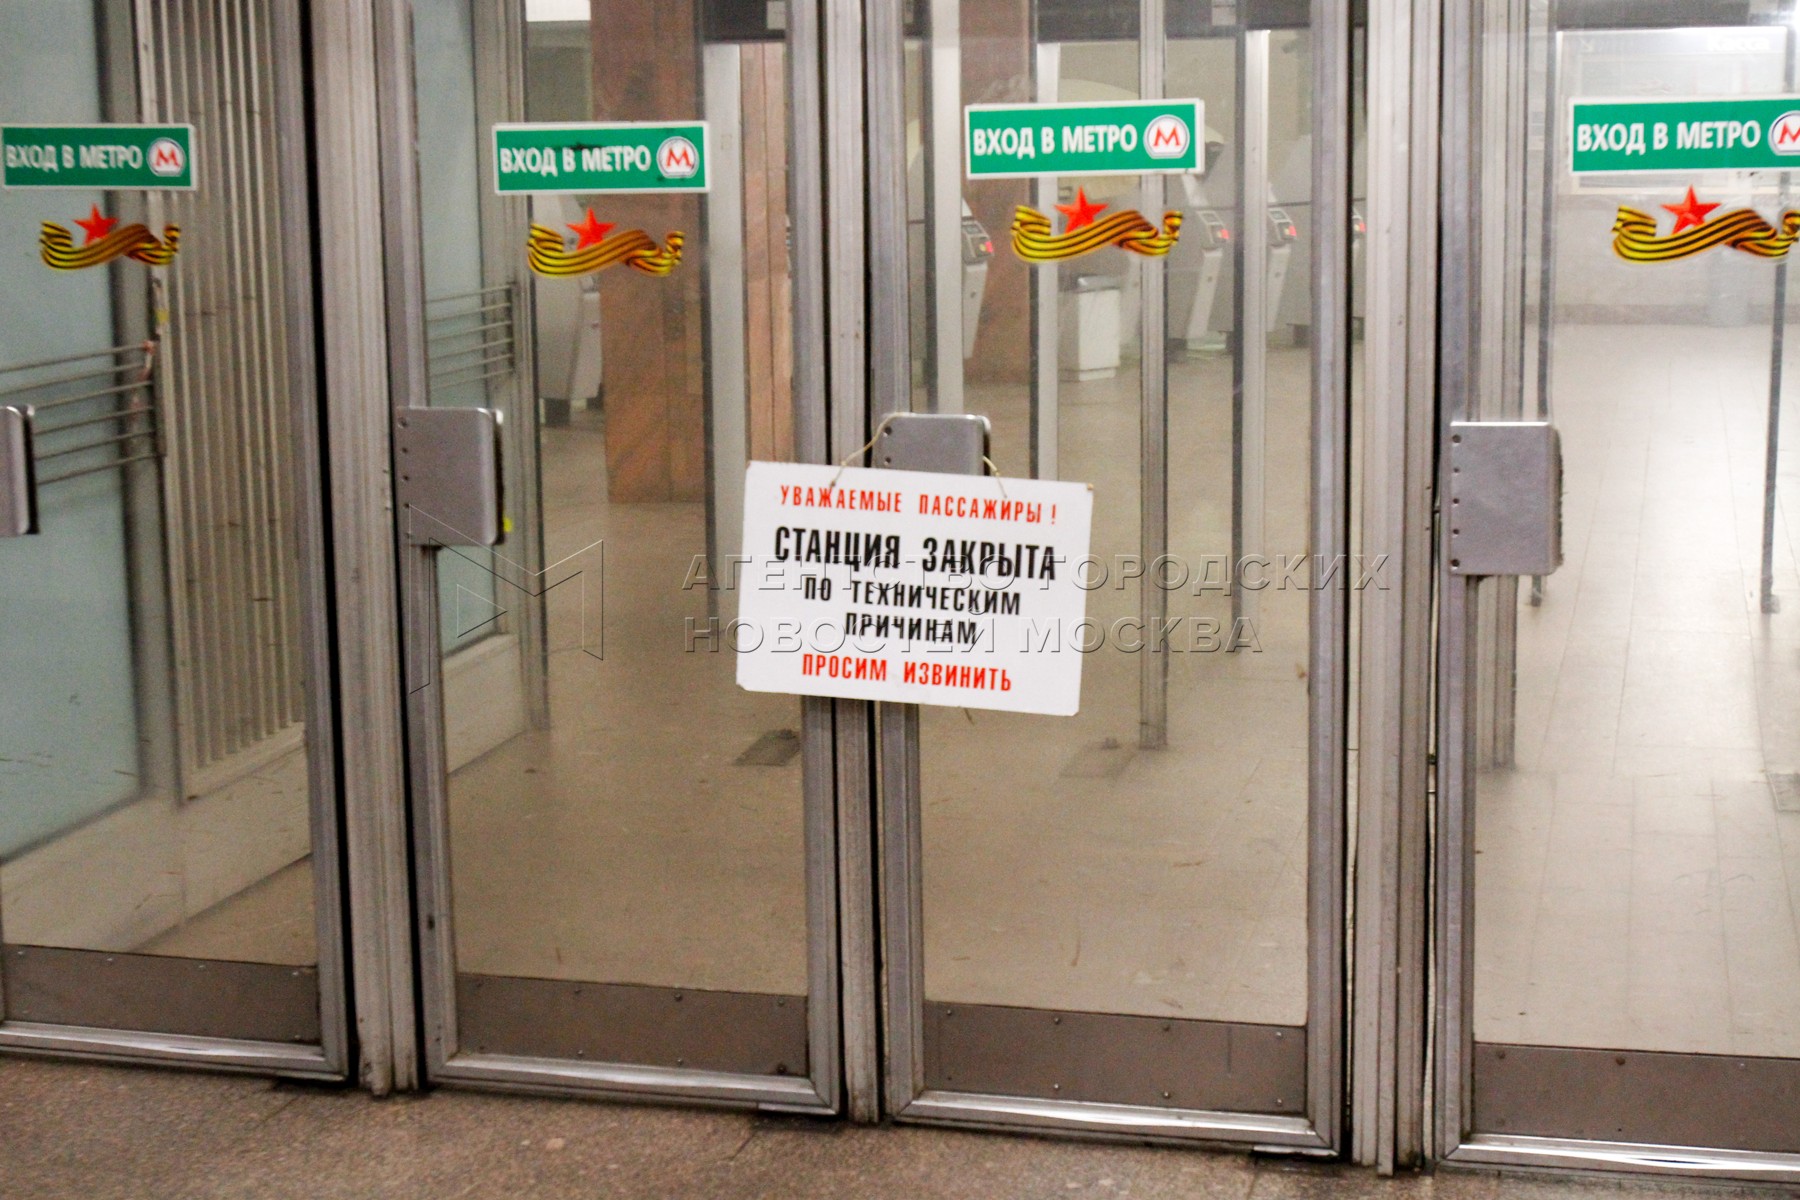 Сколько закрыли станции метро. Станция метро закрыта. Закрытие станций метро. Вход в метро закрыт. Закрытие станций метро в Москве.